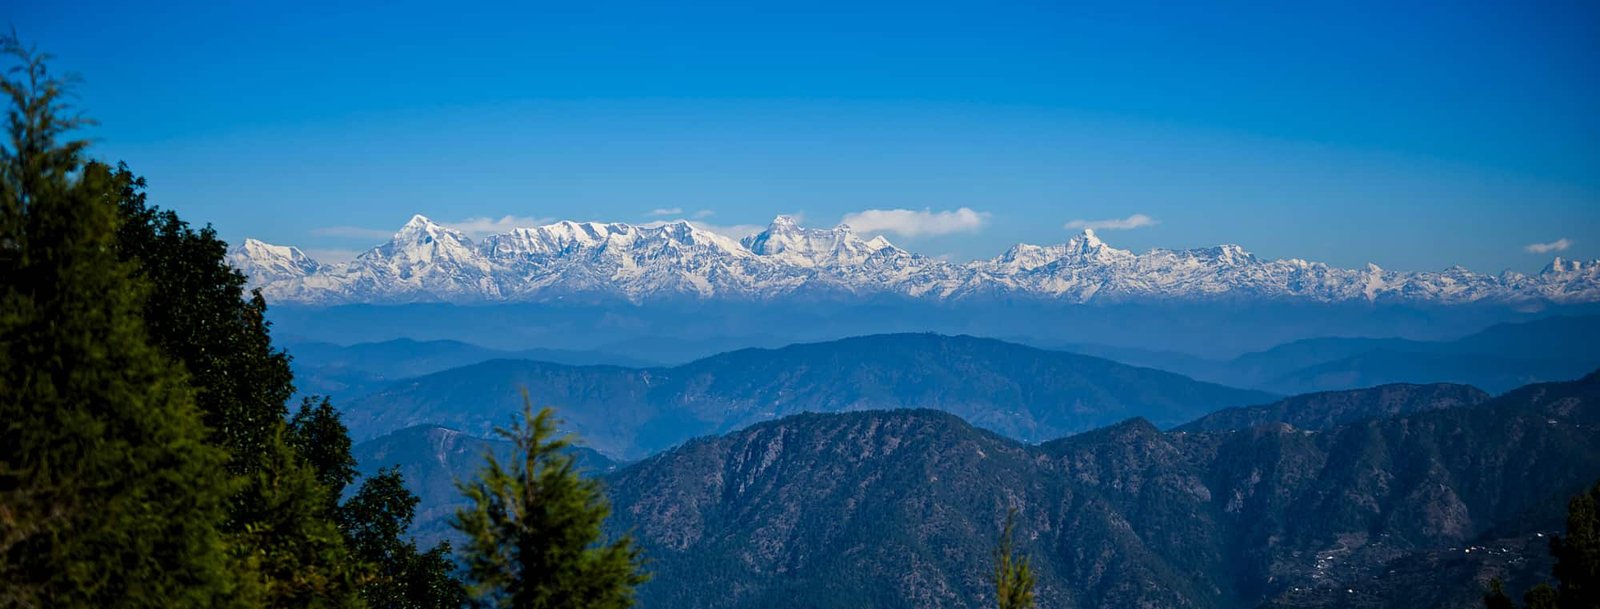 Snow View point/Himalaya Darshan nainital